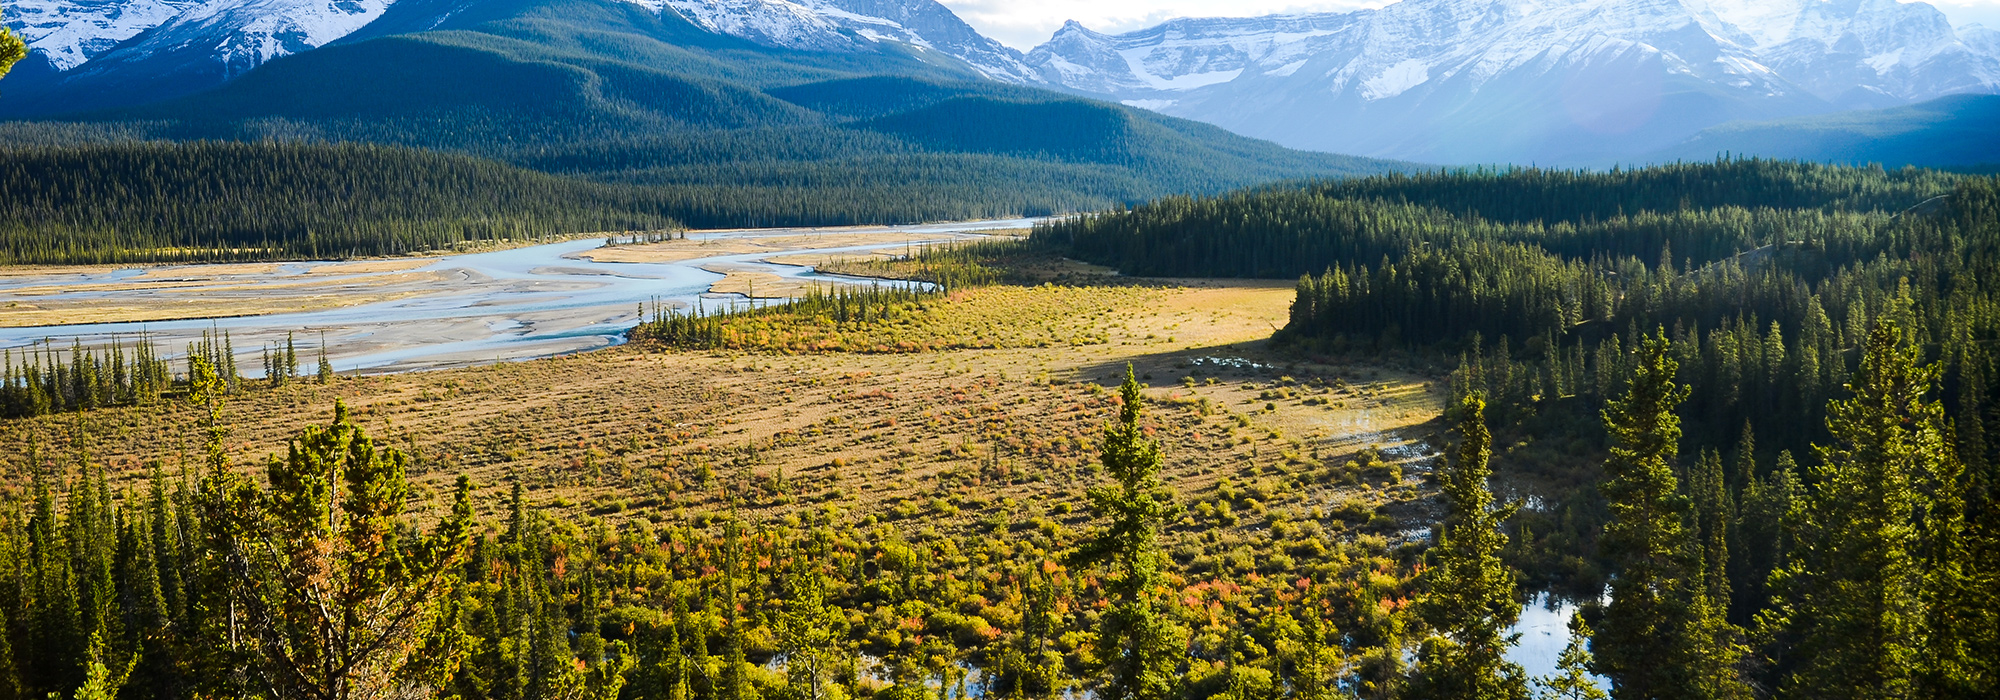 Saskatchewan landscape Images, Stock Photos & Vectors - Shutterstock